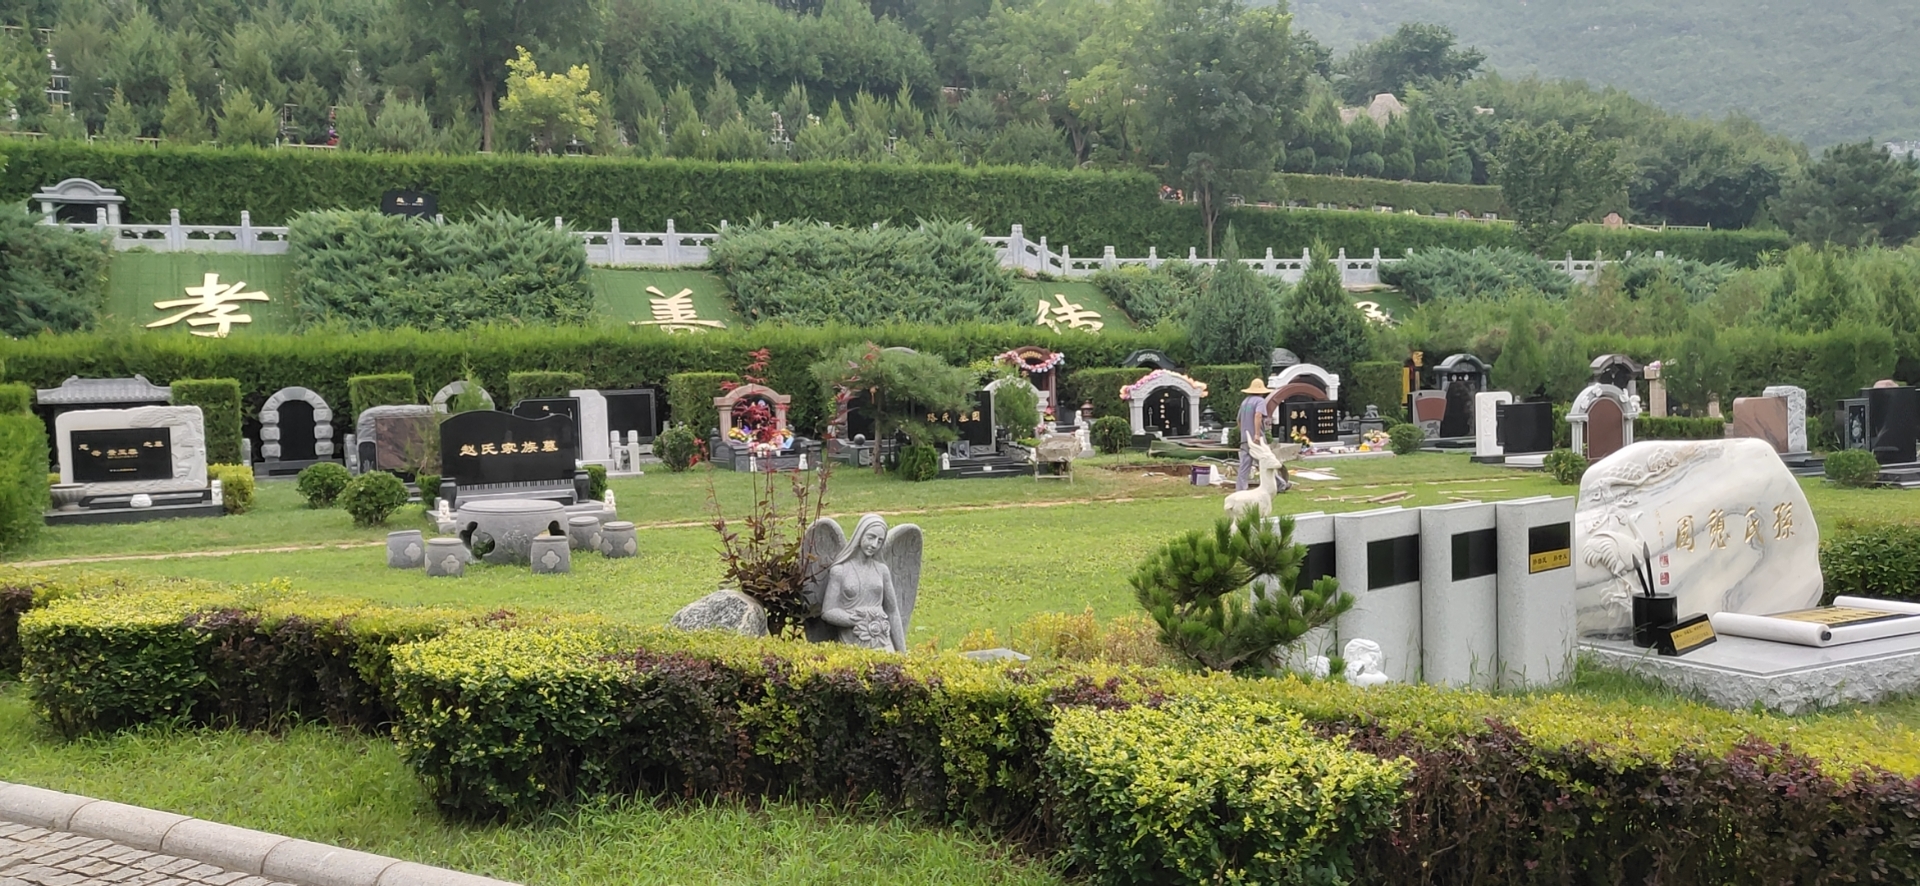 北京西边的墓地有哪些?陵园价格多少钱?